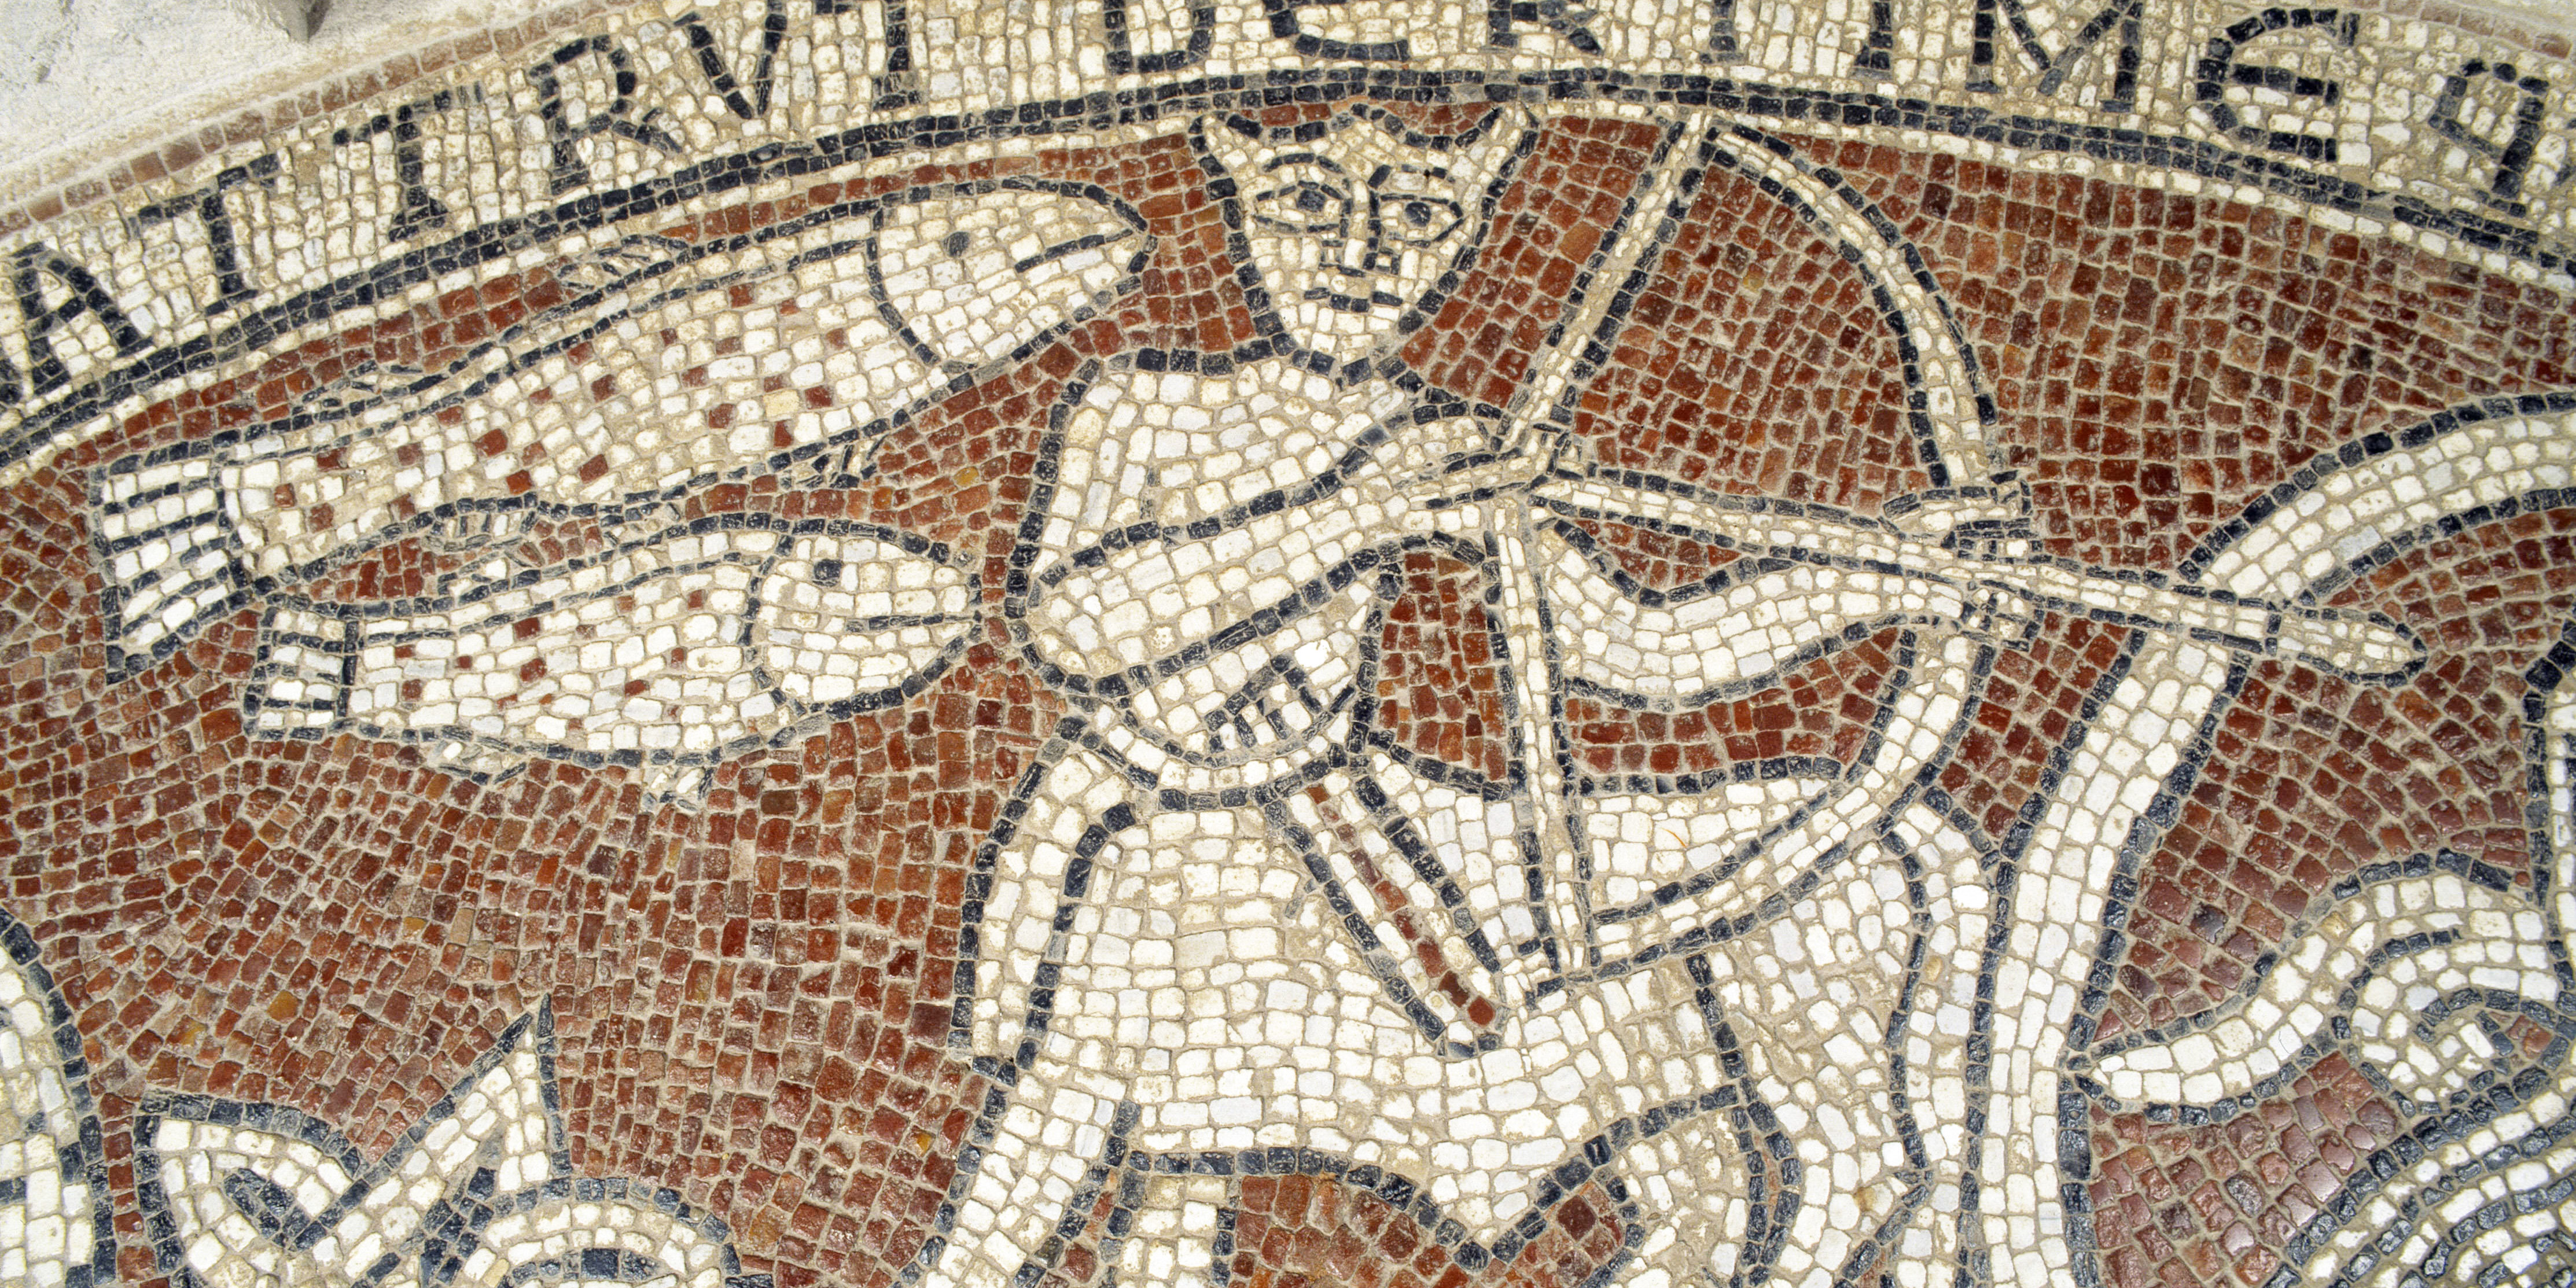 máximo pastor tierra Por qué hay monstruos enigmáticos en el arte cristiano medieval?